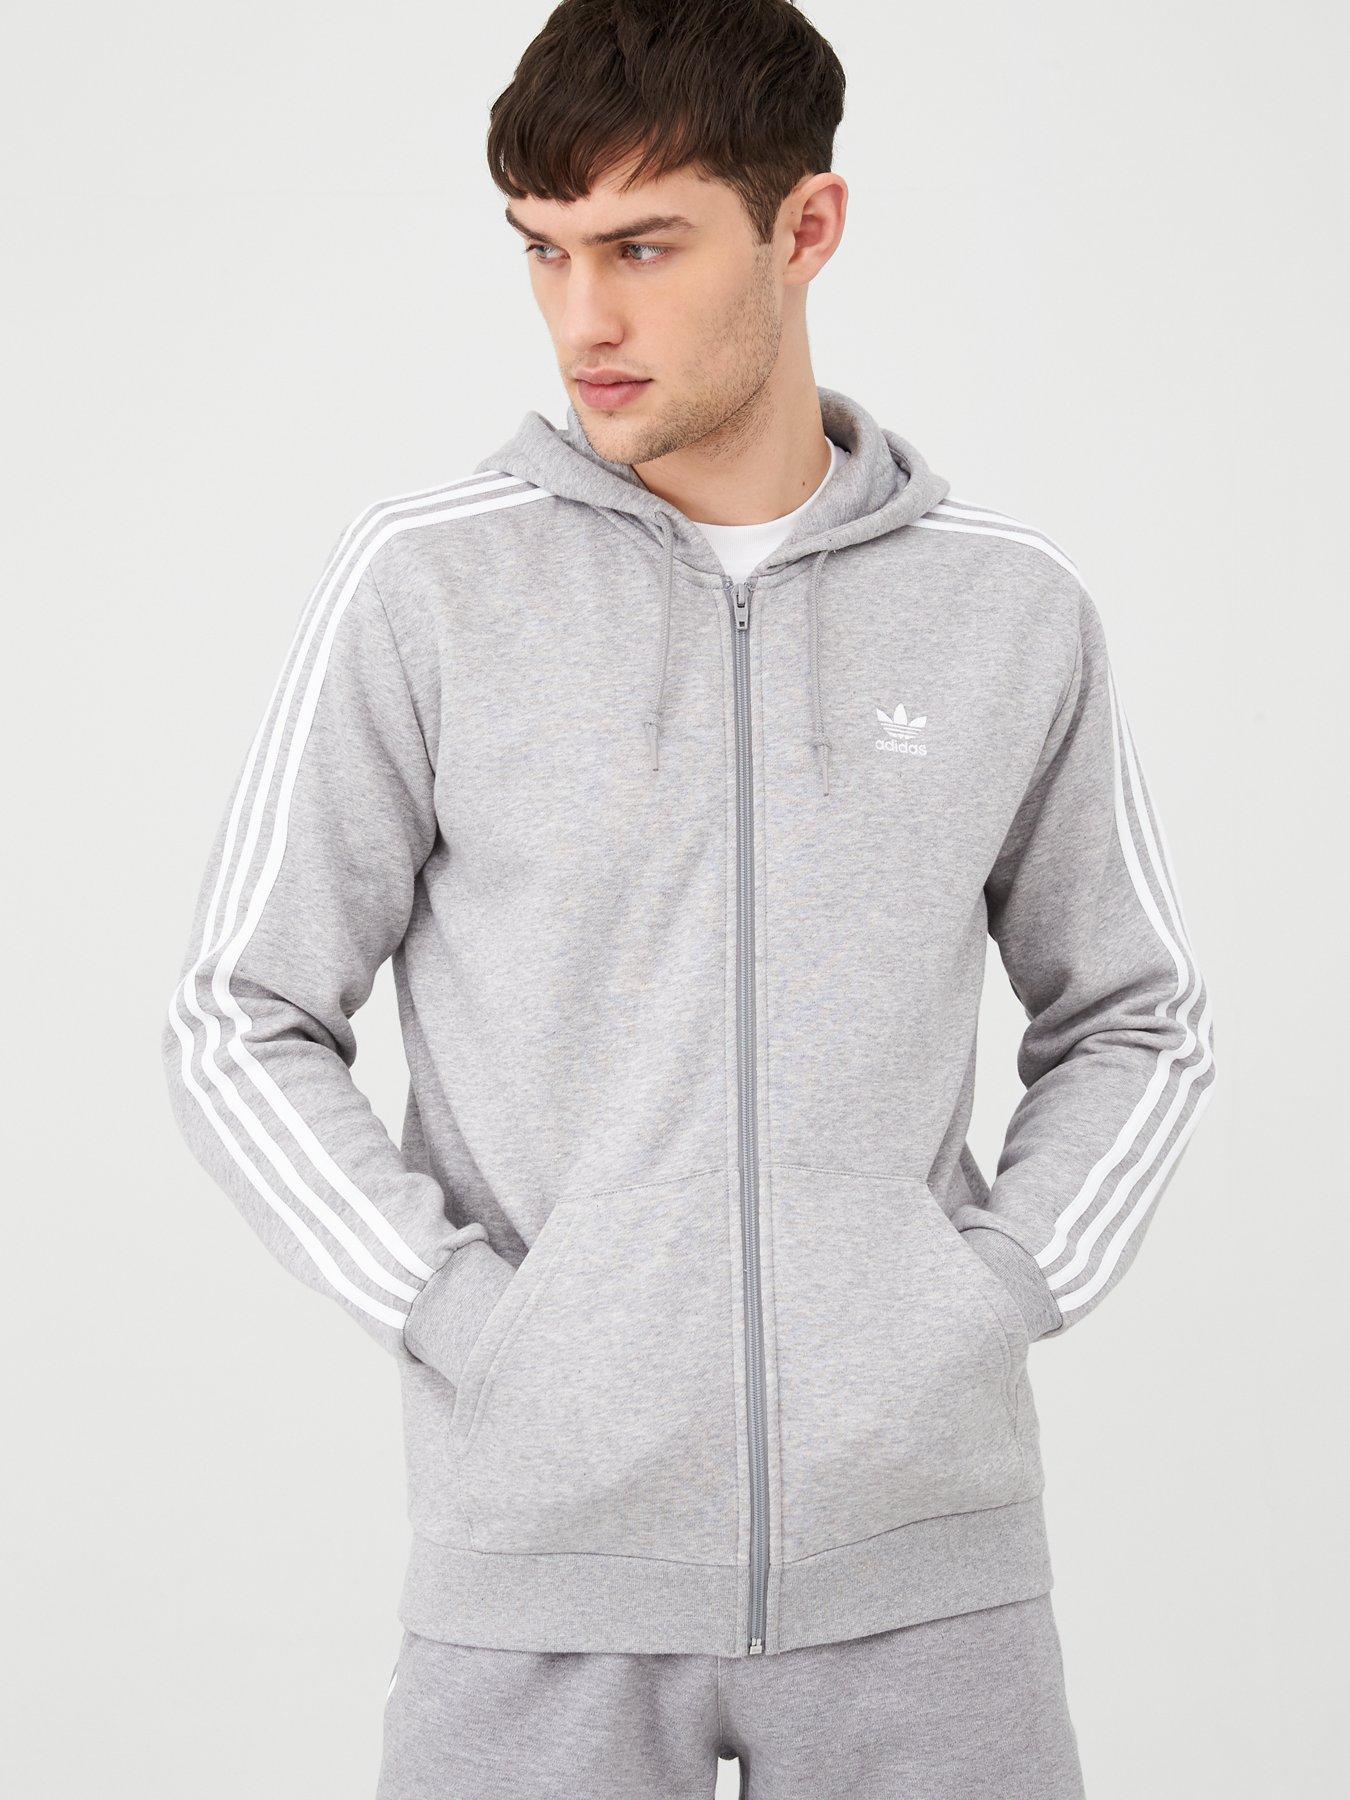 grey adidas hoodie